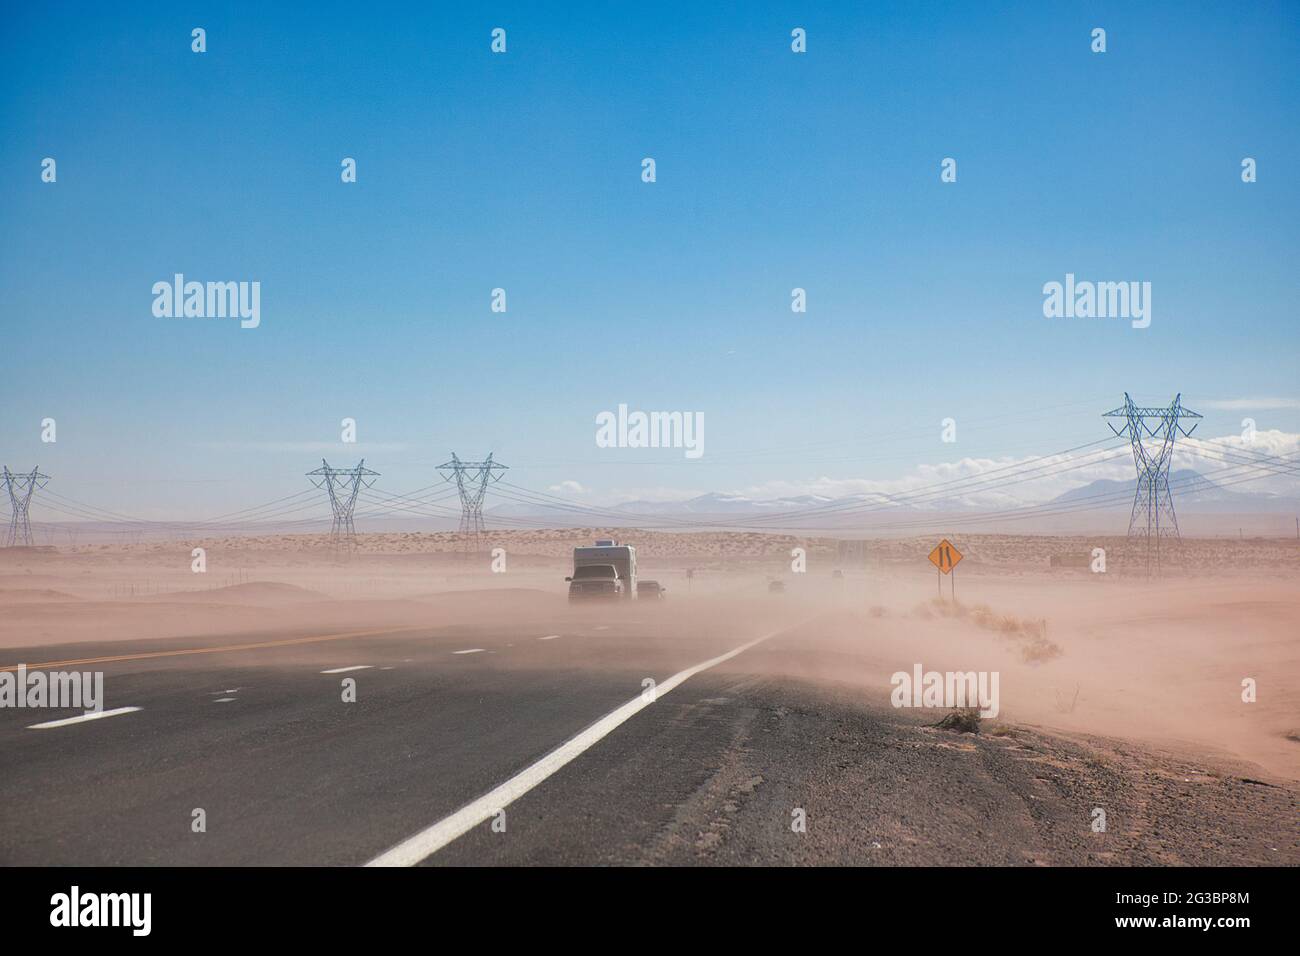 Pylônes d'électricité traversant une route en semi-désert avec une couche de poussière qui souffle sur la route et deux véhicules qui voyagent, en Arizona, aux États-Unis Banque D'Images